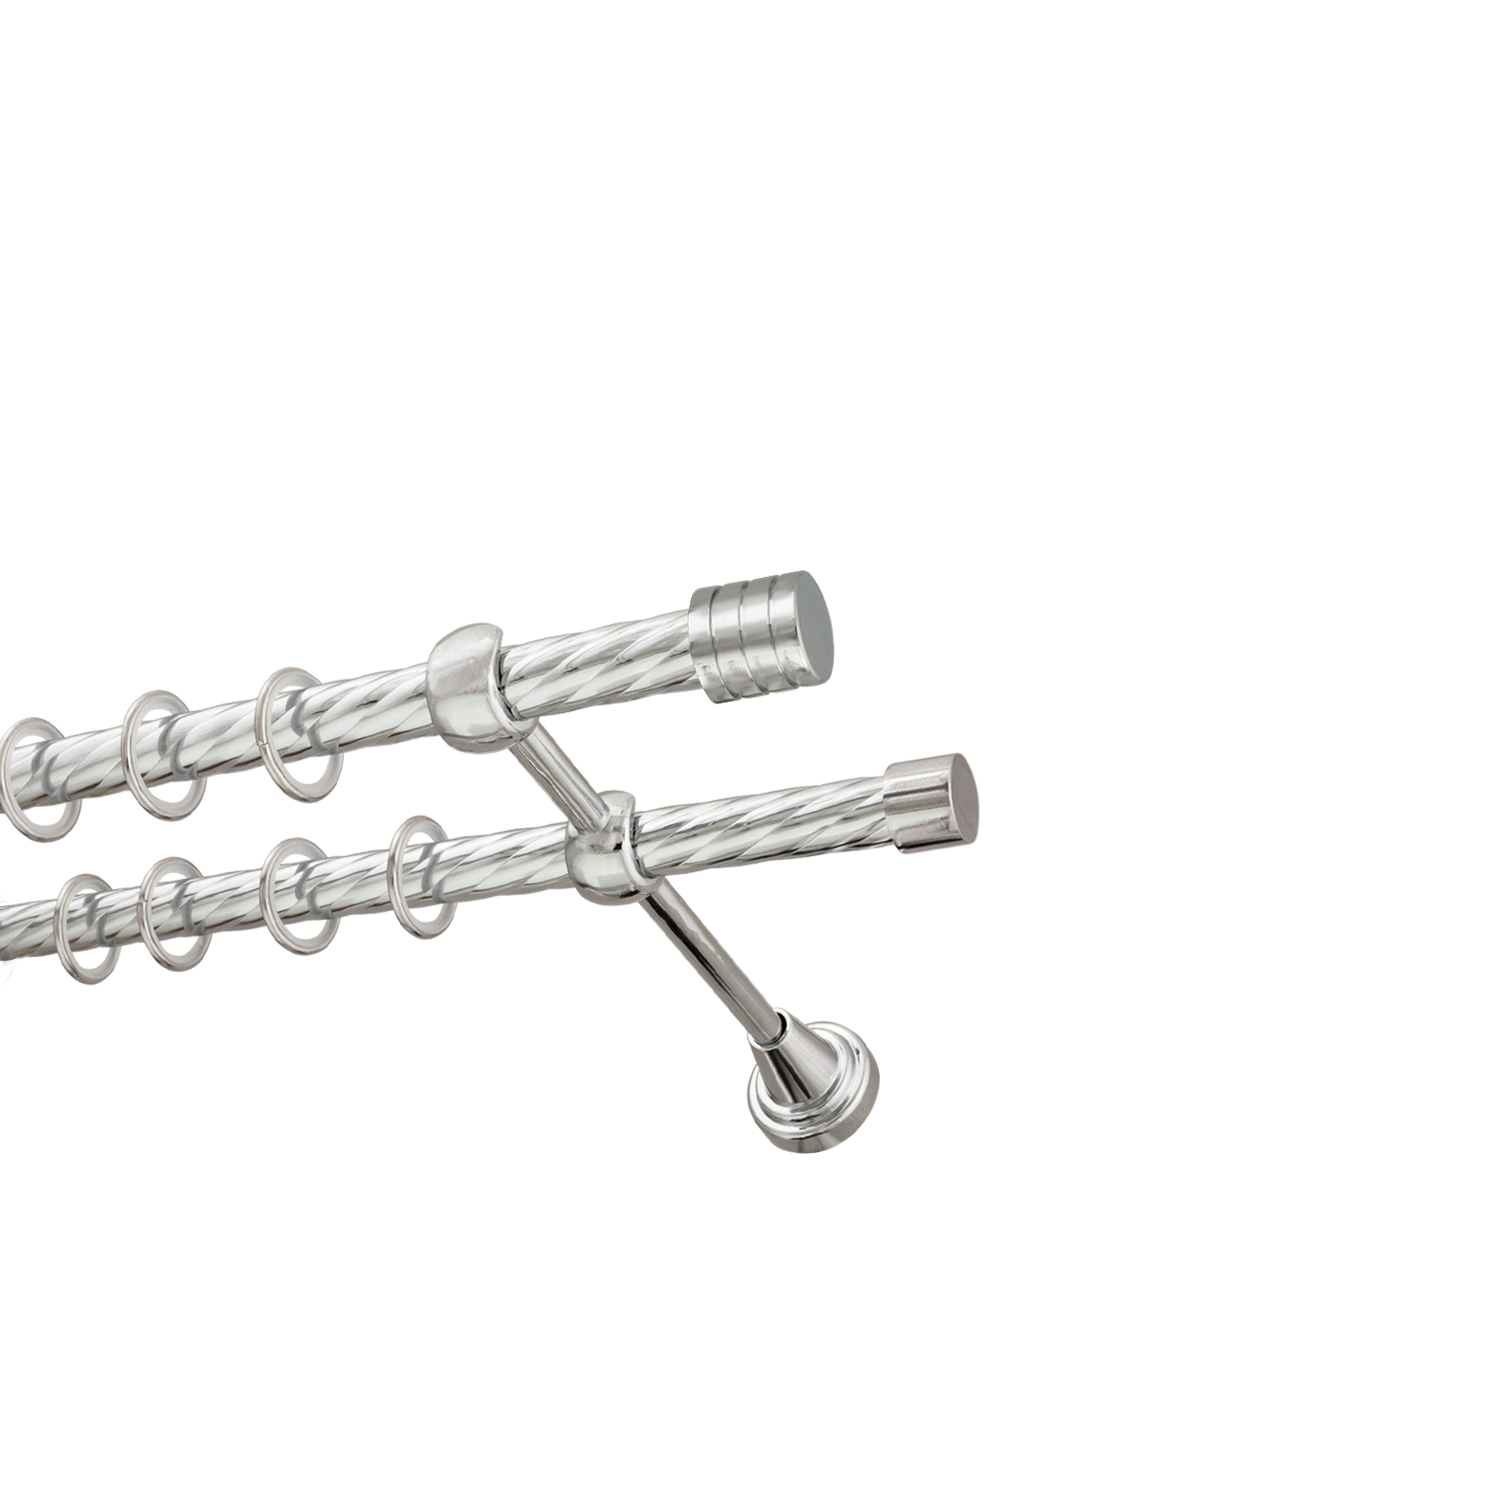 Металлический карниз для штор Подиум, двухрядный 16/16 мм, серебро, витая штанга, длина 180 см